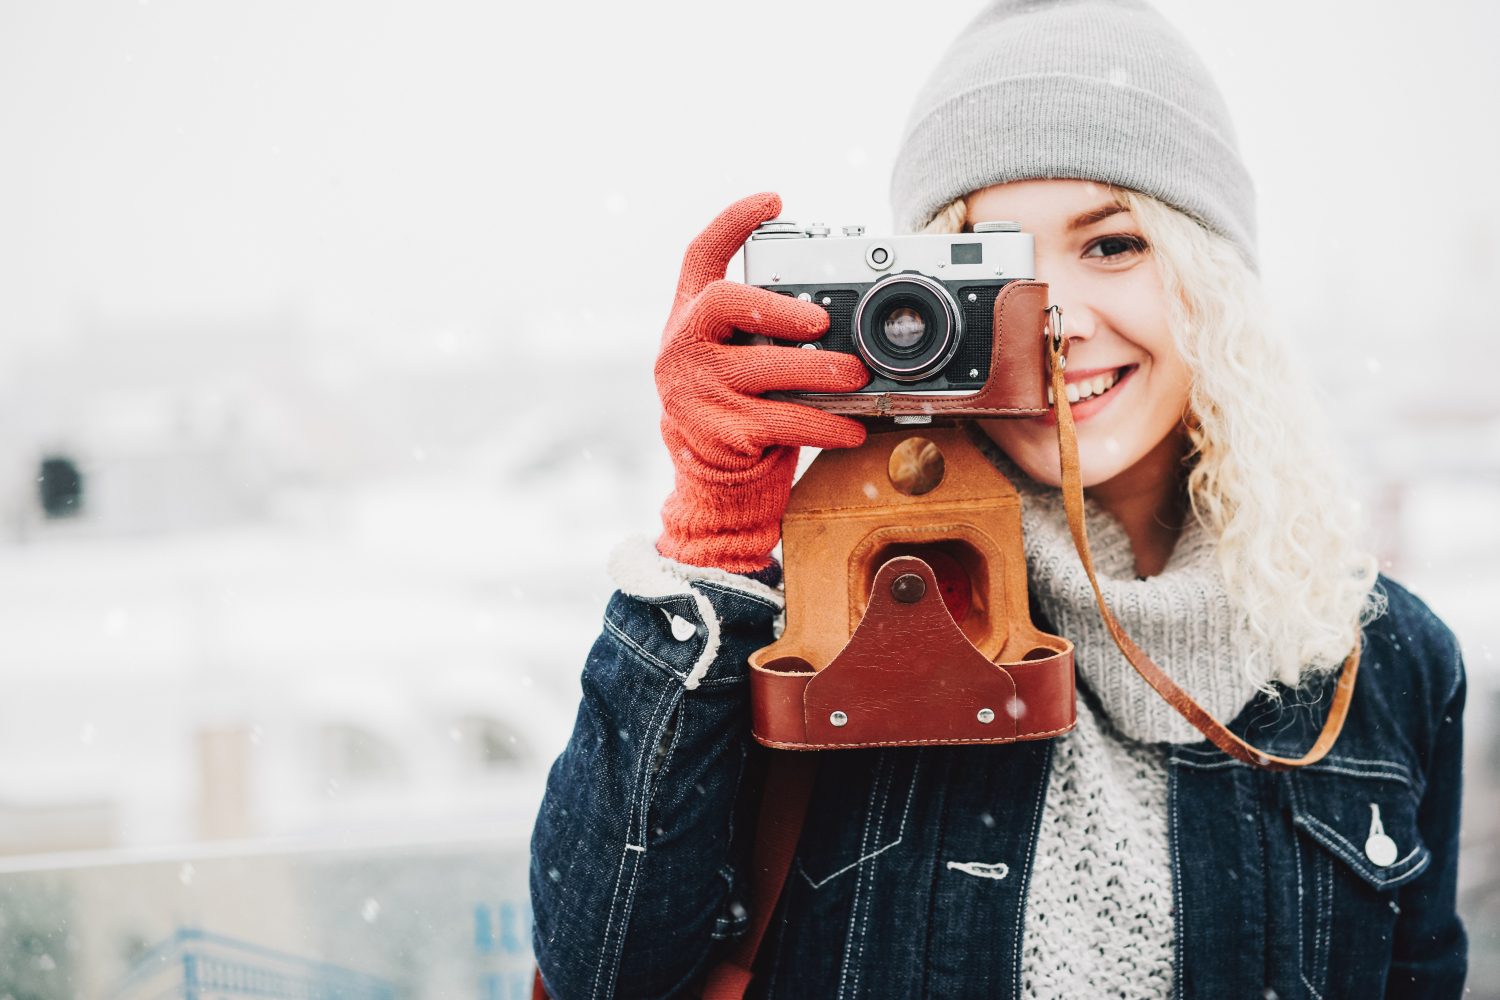  10 idei pentru fotografii sau proiecte foto pe timp de iarnă